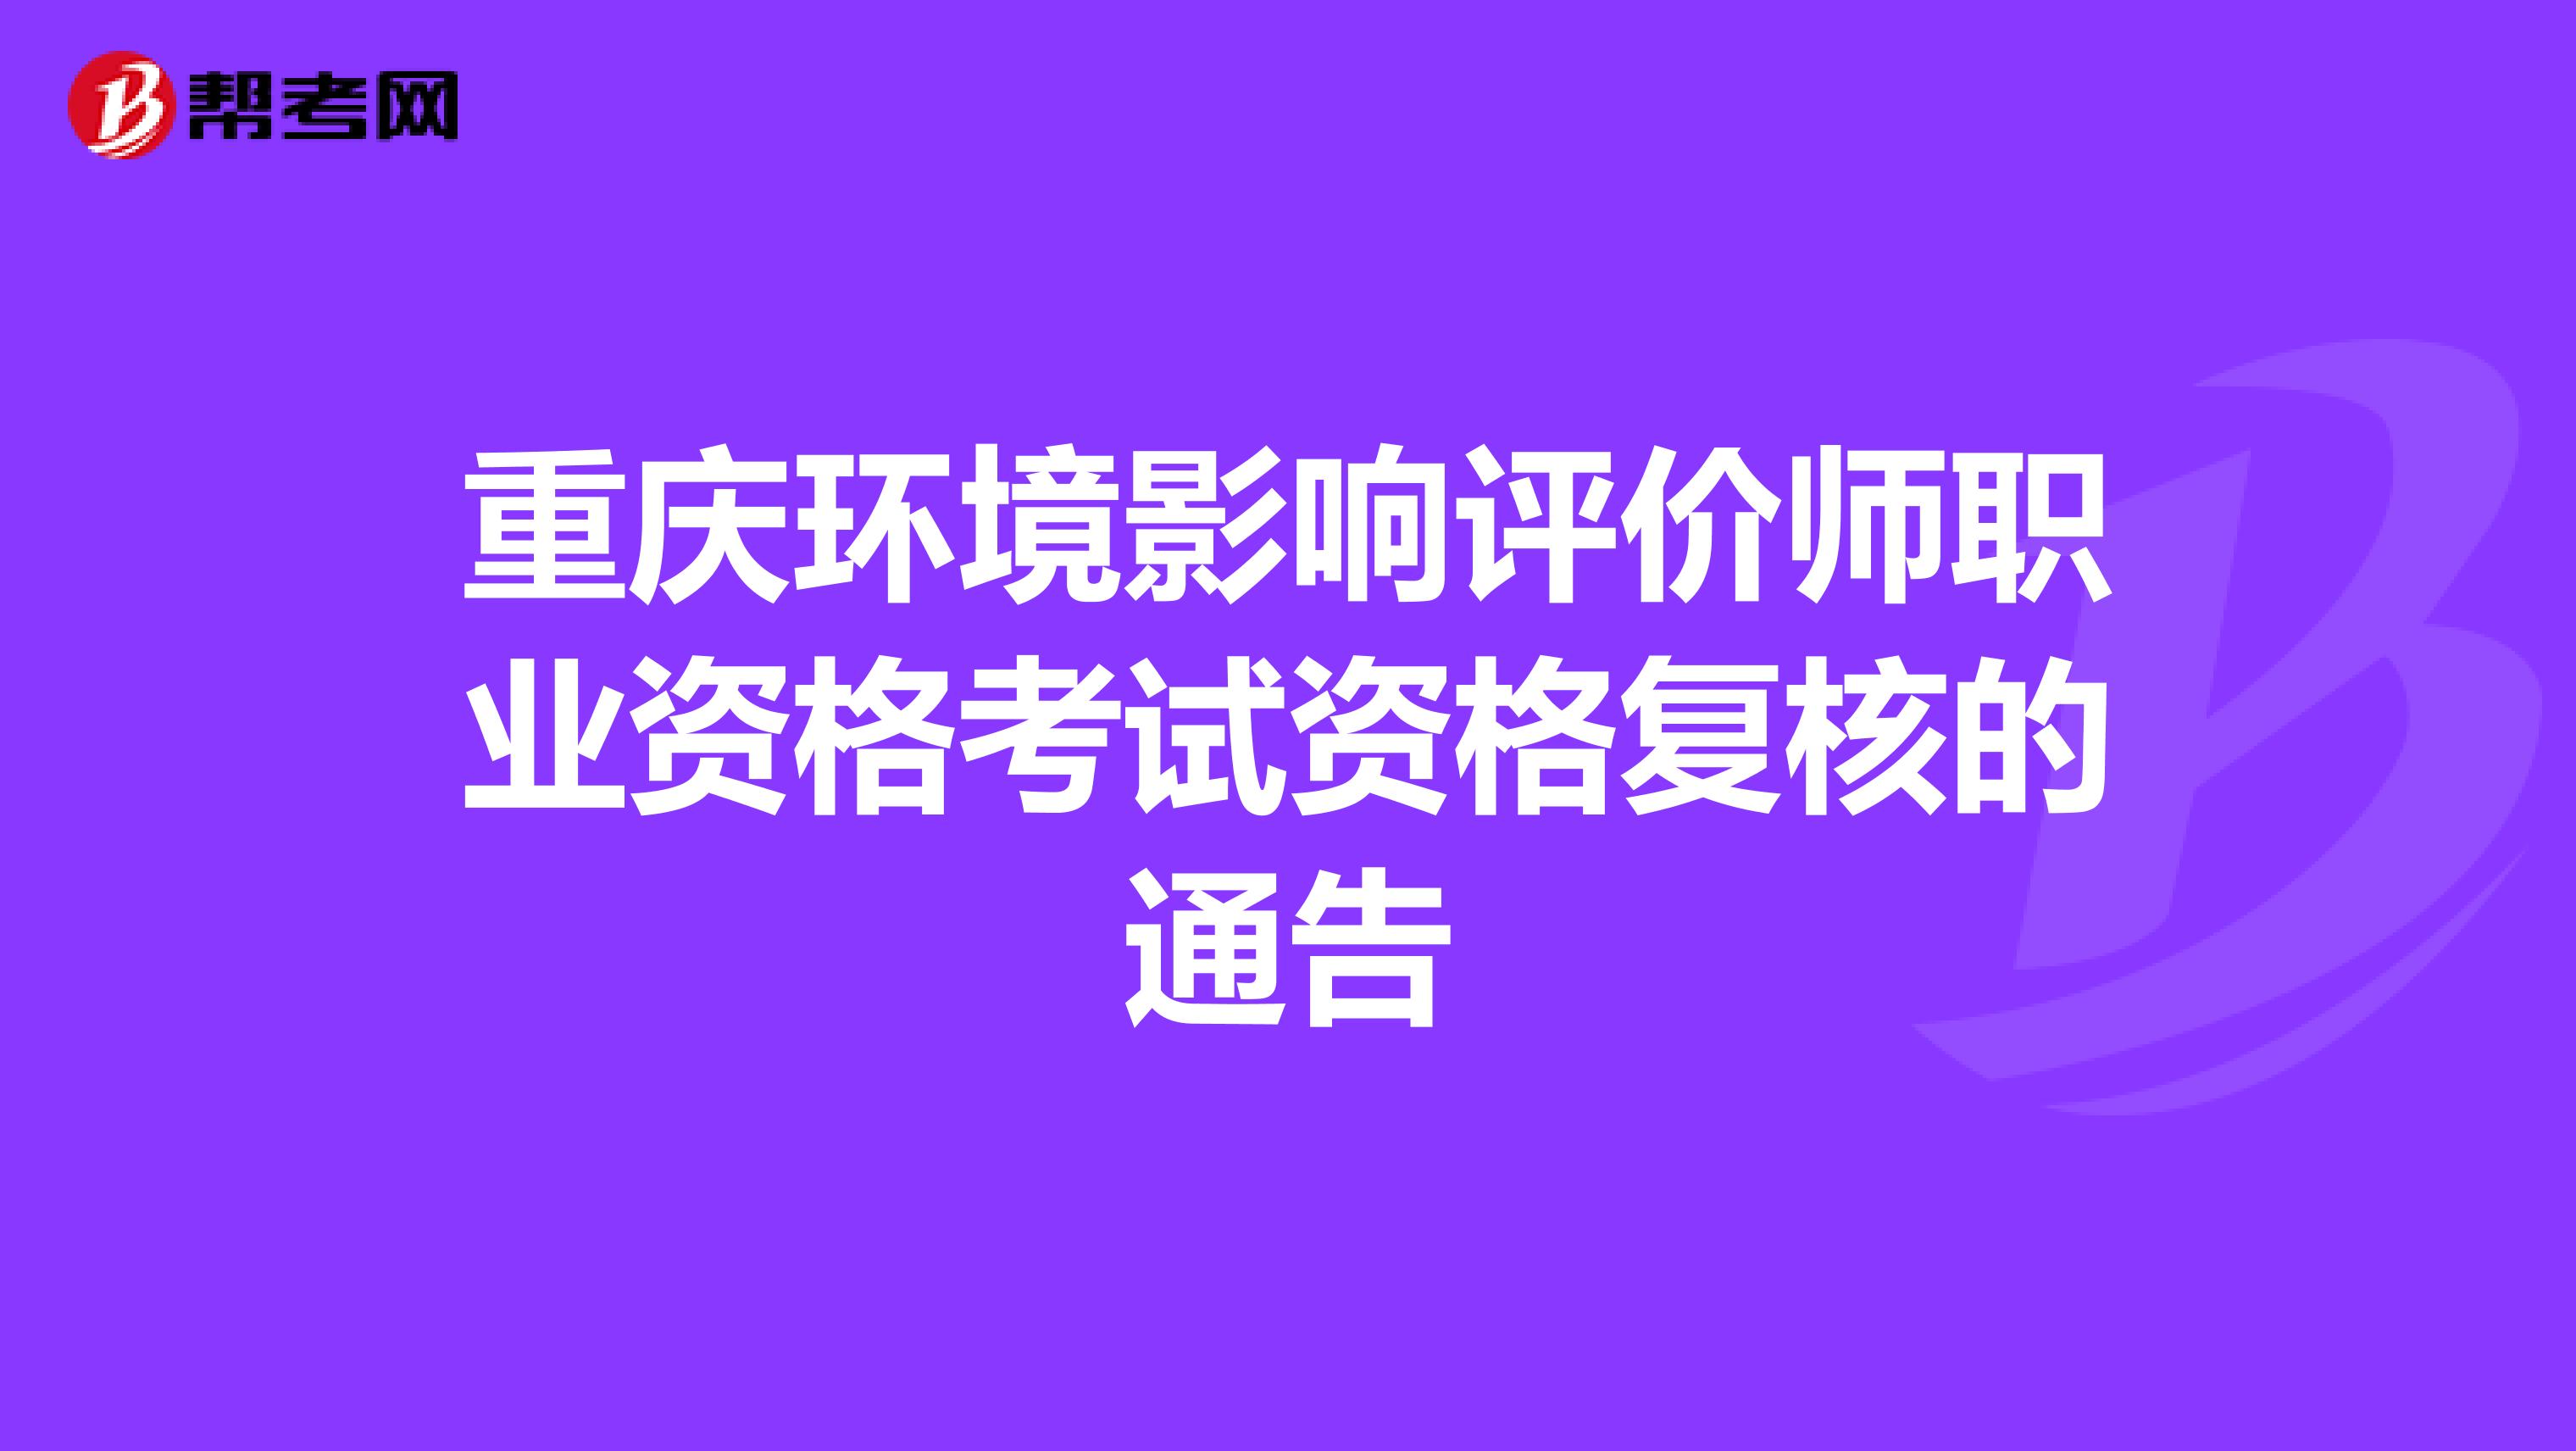 重庆环境影响评价师职业资格考试资格复核的通告